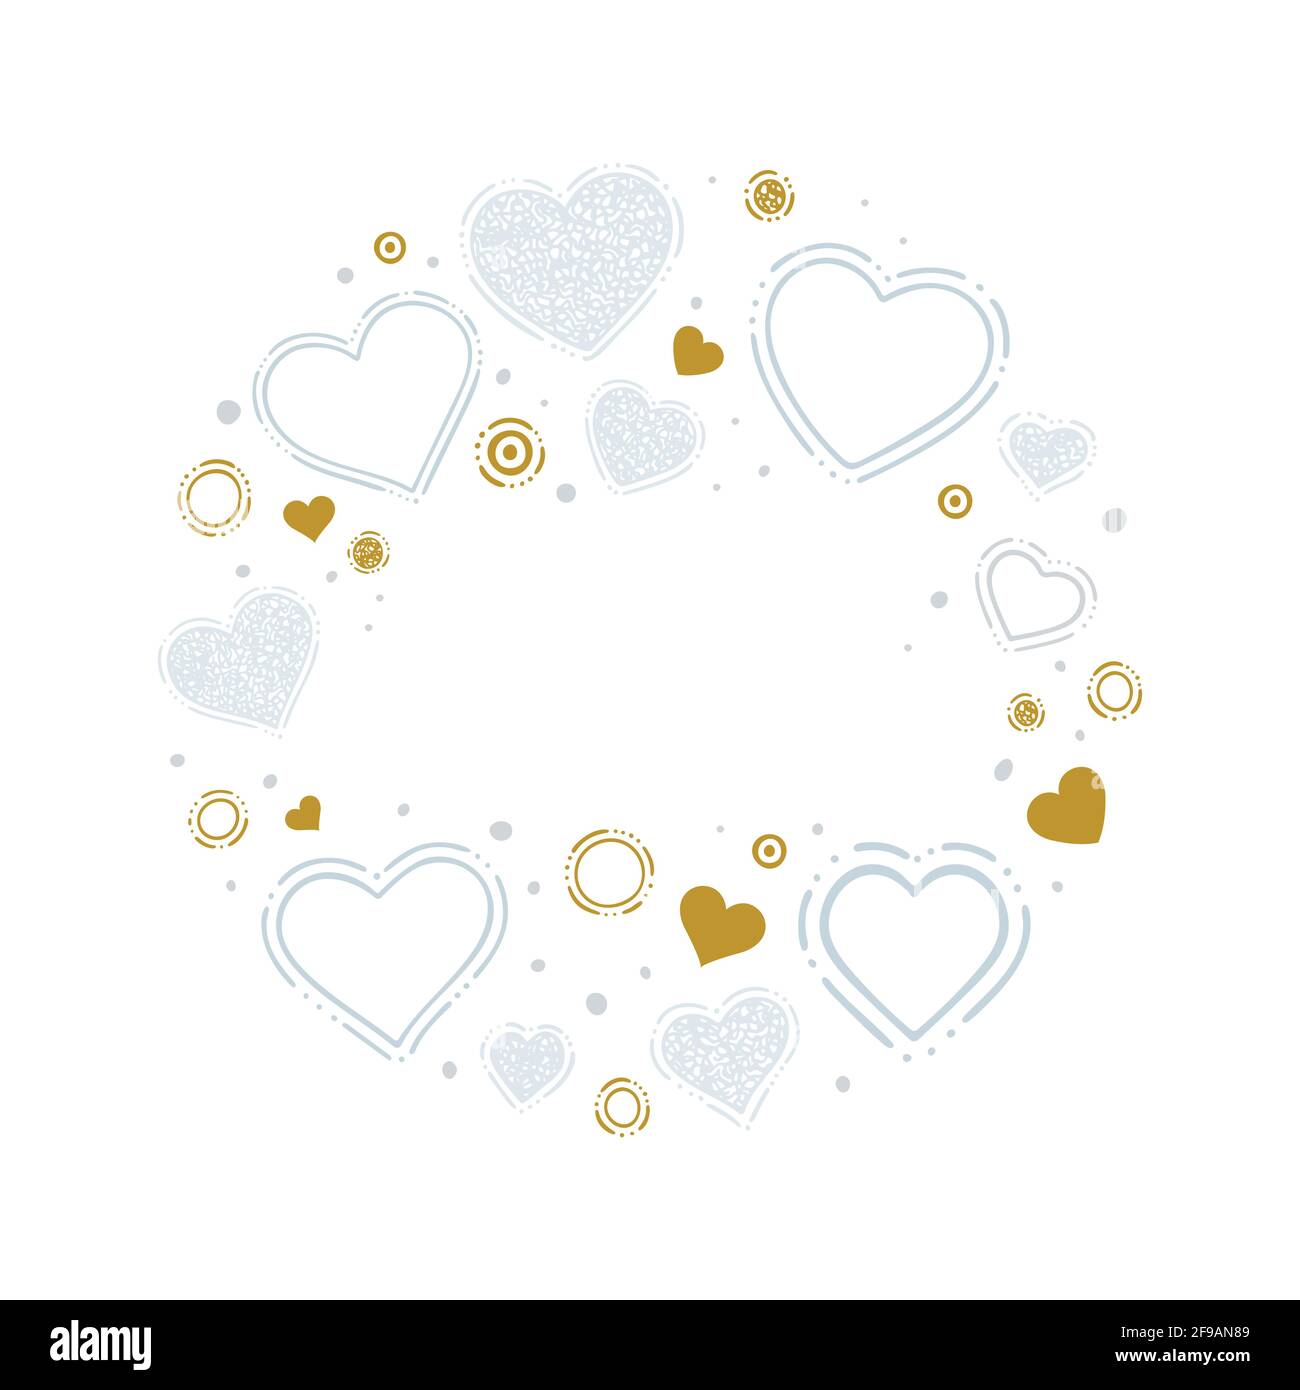 Herzen. Handgezeichnete Herzen und Designelemente Illustration mit Textstelle. Doodle Zeichnung romantischen Hintergrund mit verschiedenen Herzen Symbole. Teil von Stock Vektor